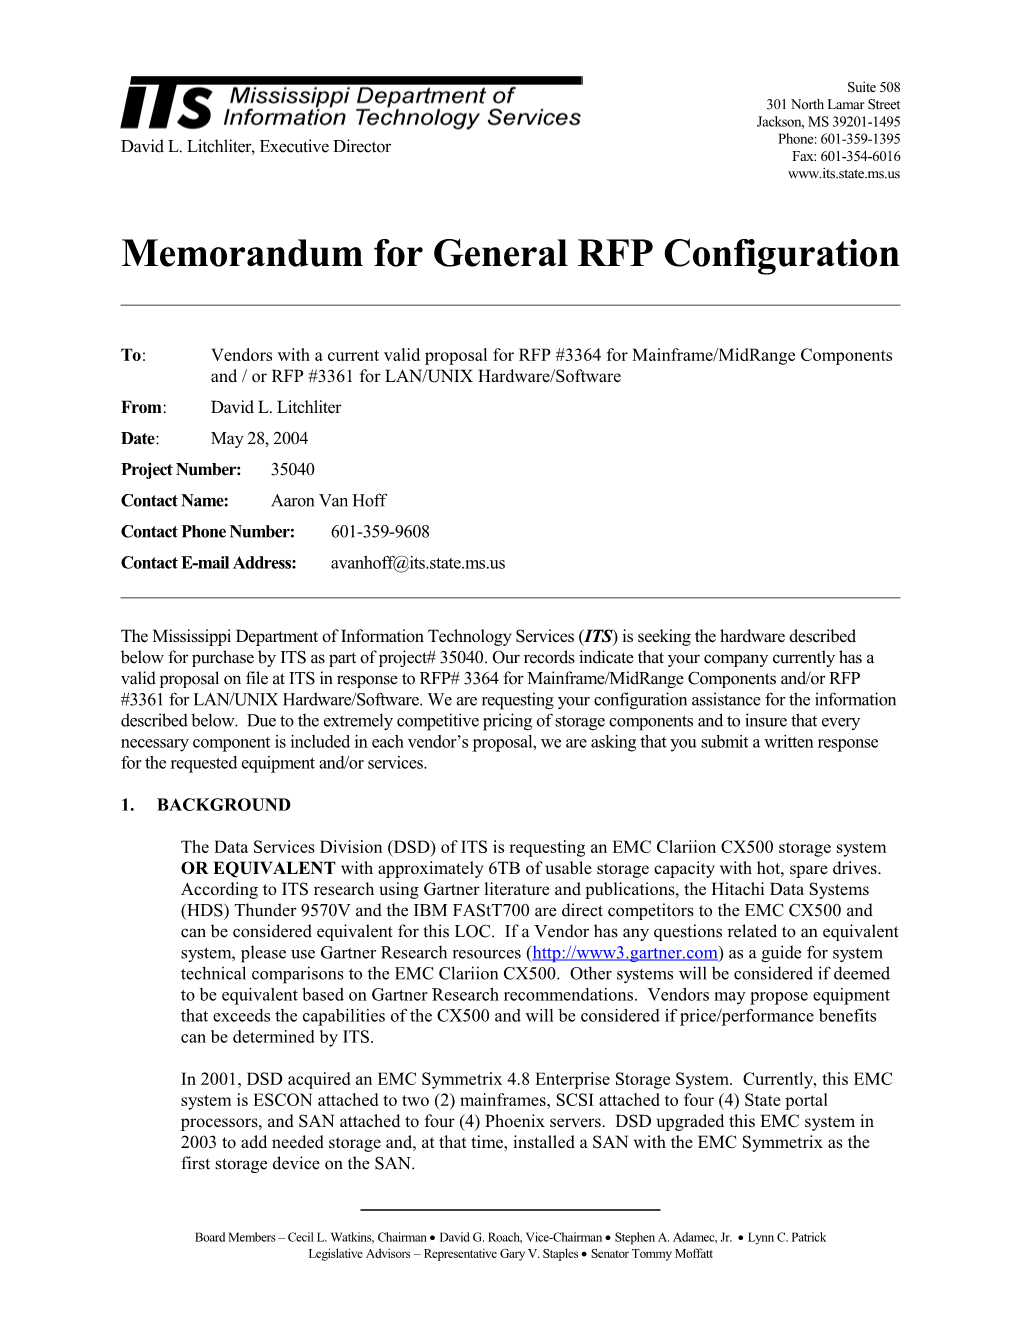 Memorandum for General RFP Configuration s10